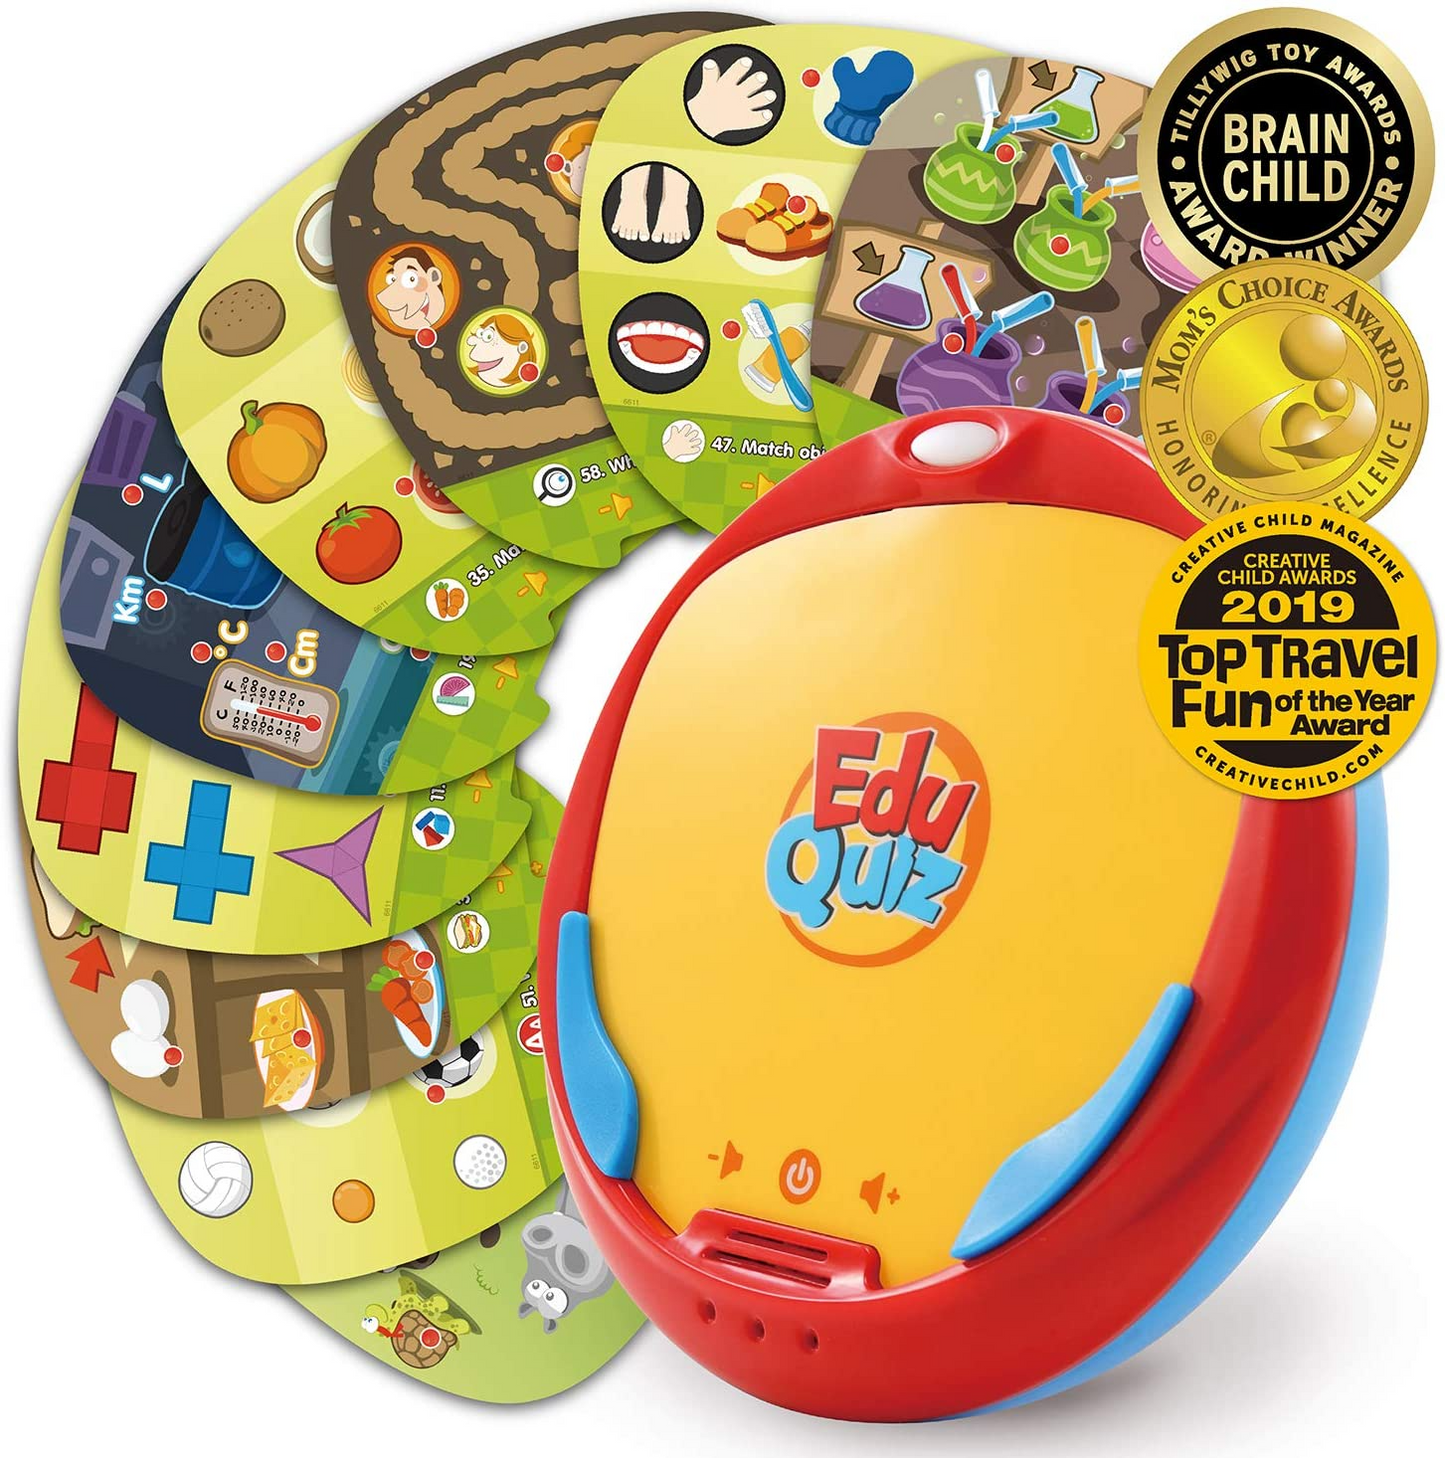 BEST LEARNING Conjunto Básico I do EduQuiz - Brinquedo de Combinação Educacional Interativo para Crianças